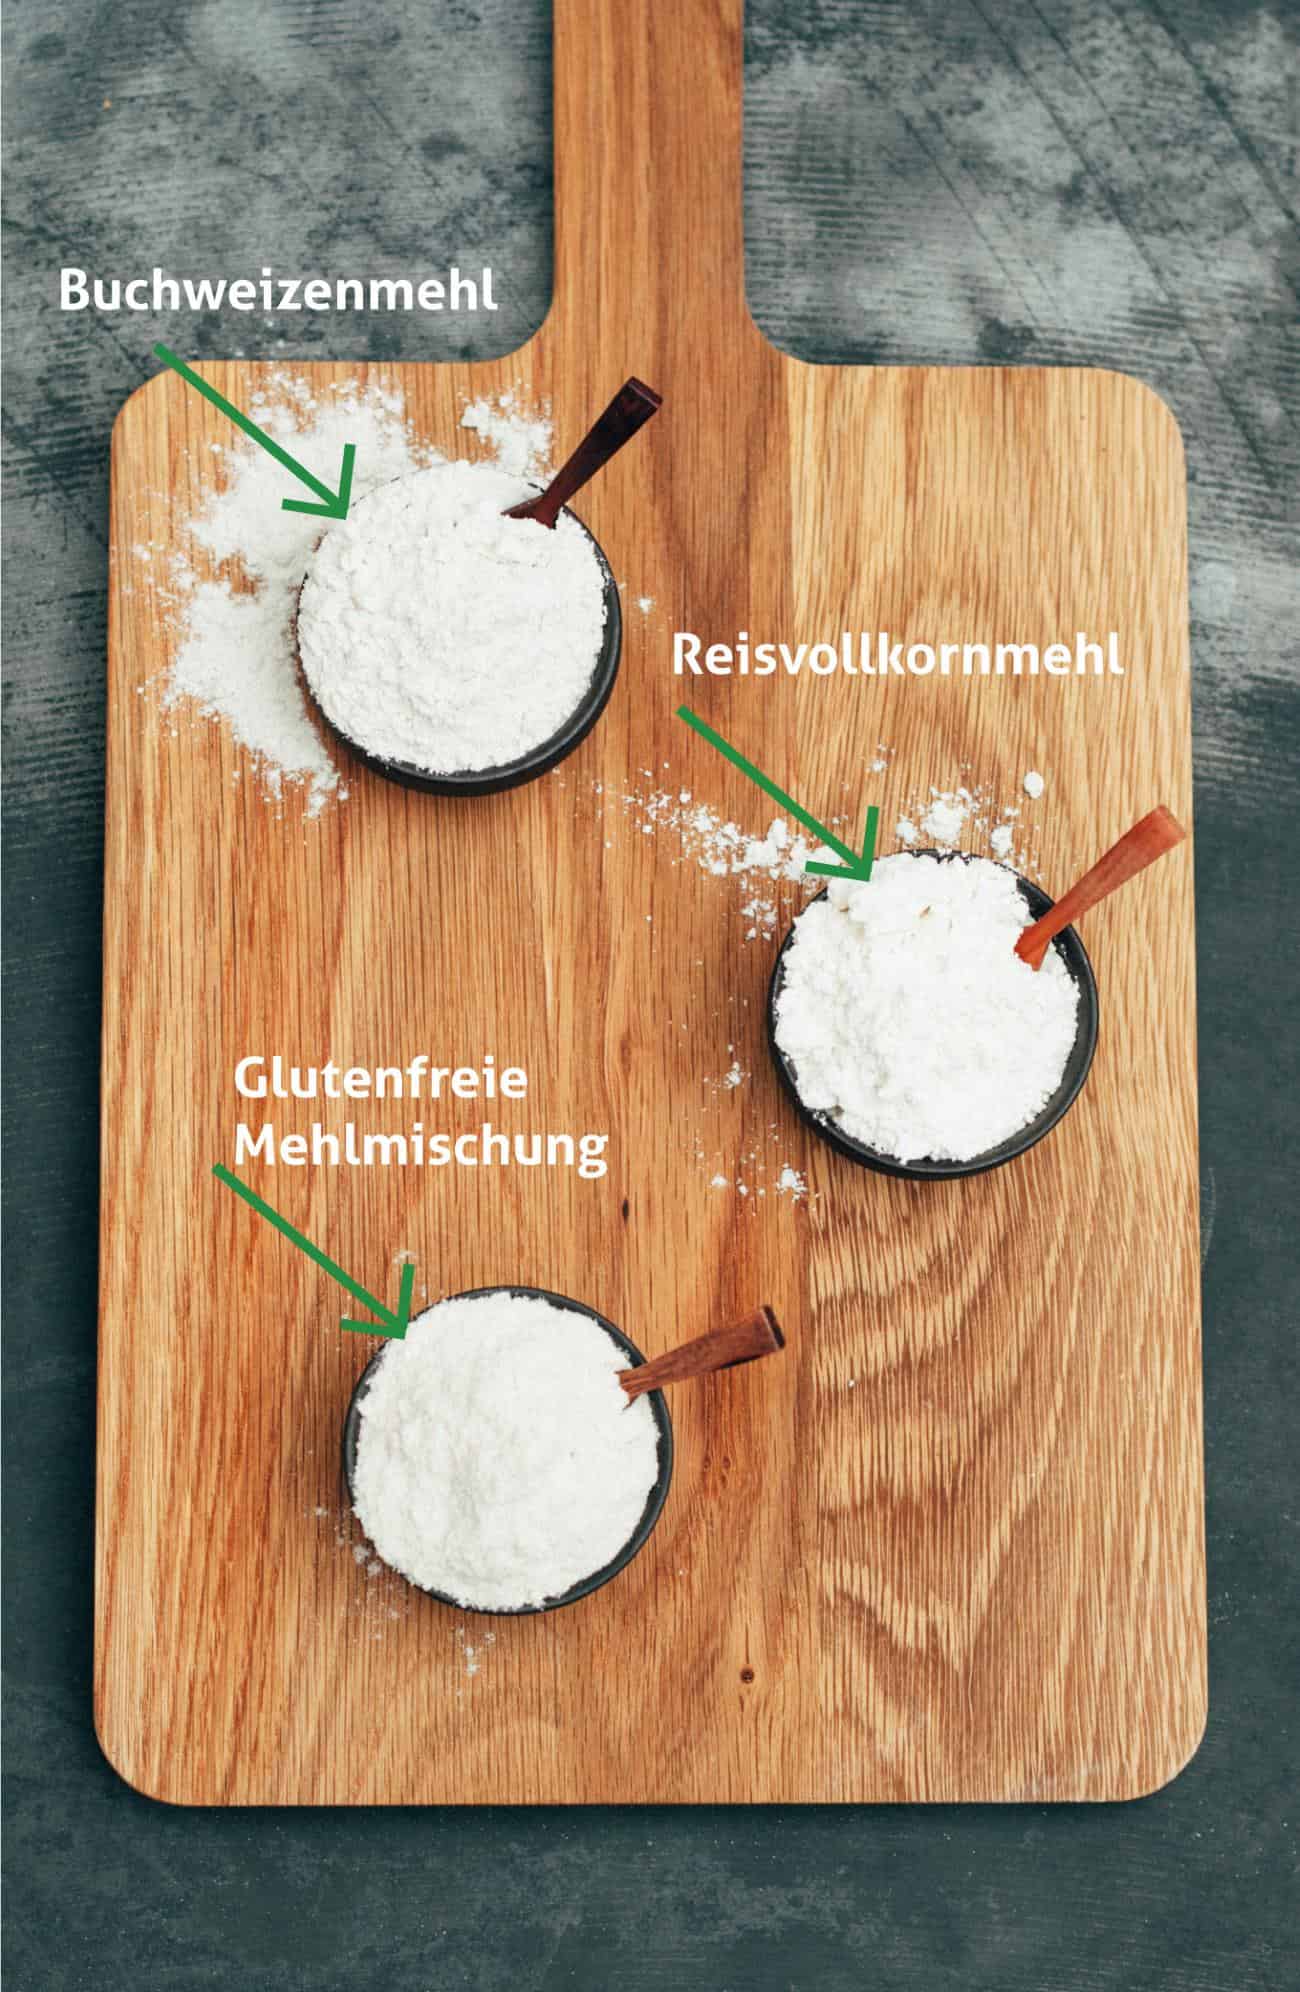 DIY glutenfreie Mehlmischung Rezept mit nur 3 Zutaten in 5 Minuten fertig